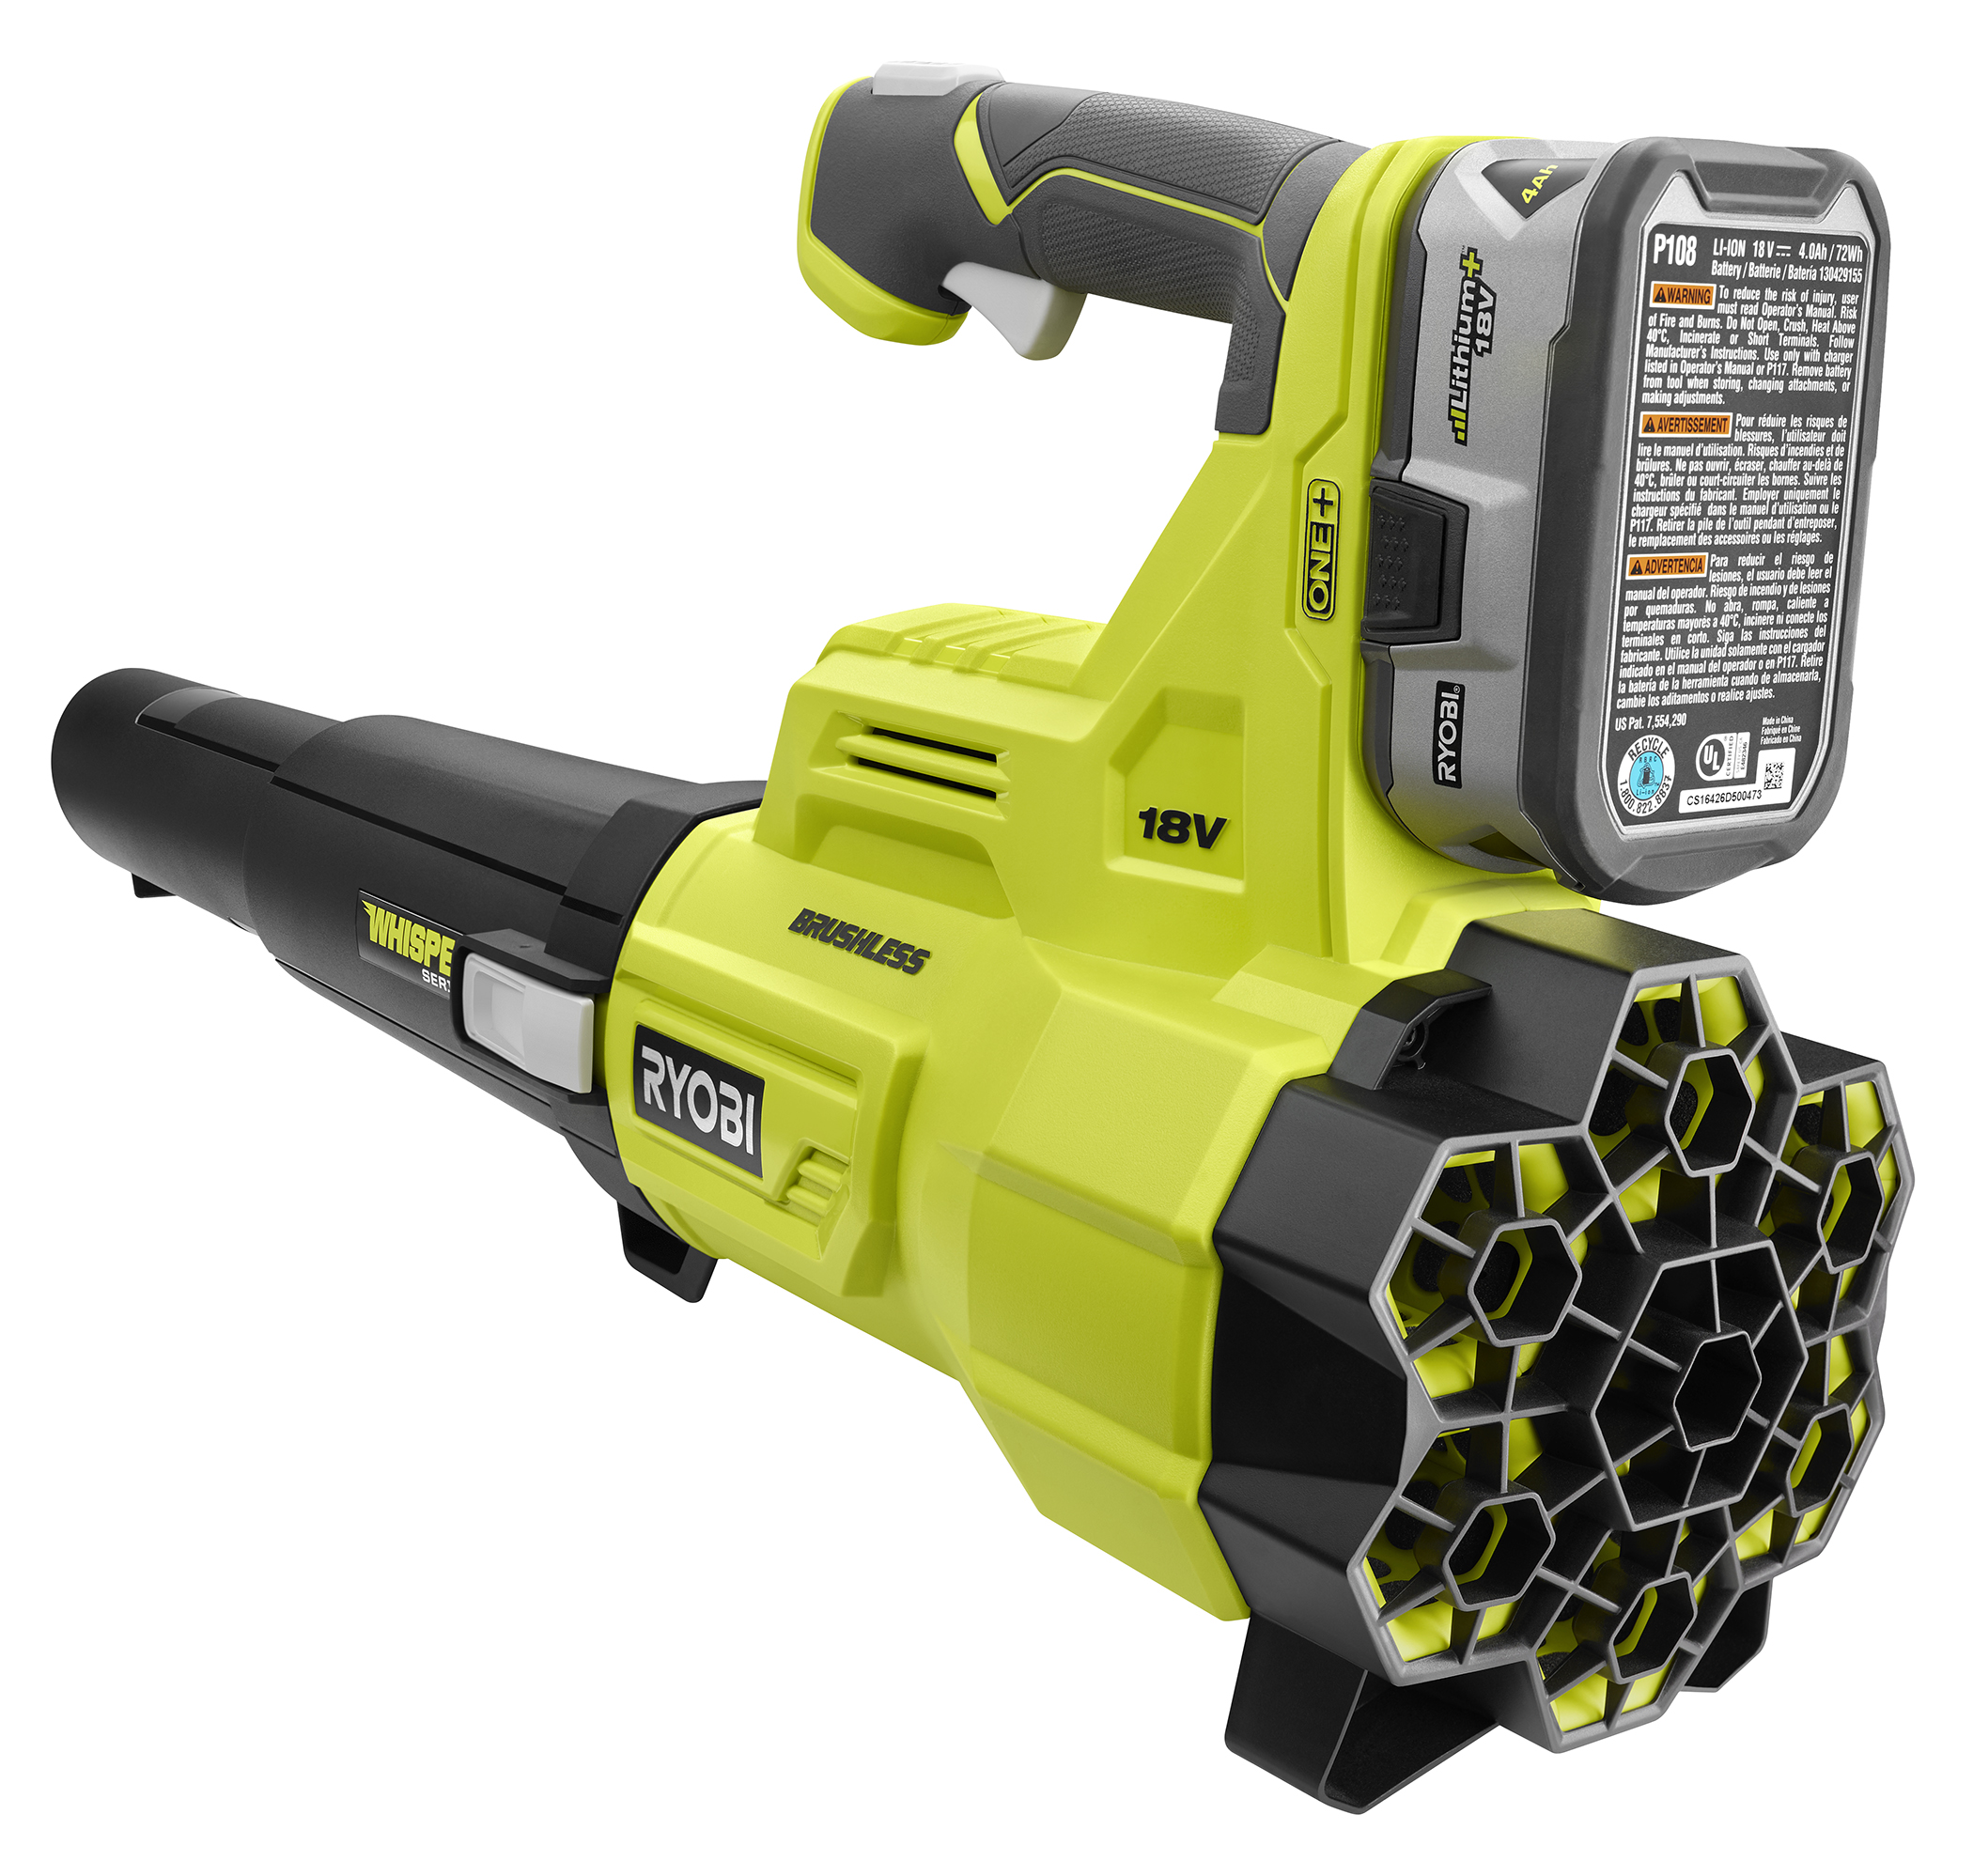 18V ONE+ BRUSHLESS 410 CFM Whisper Series Blower - RYOBI Tools